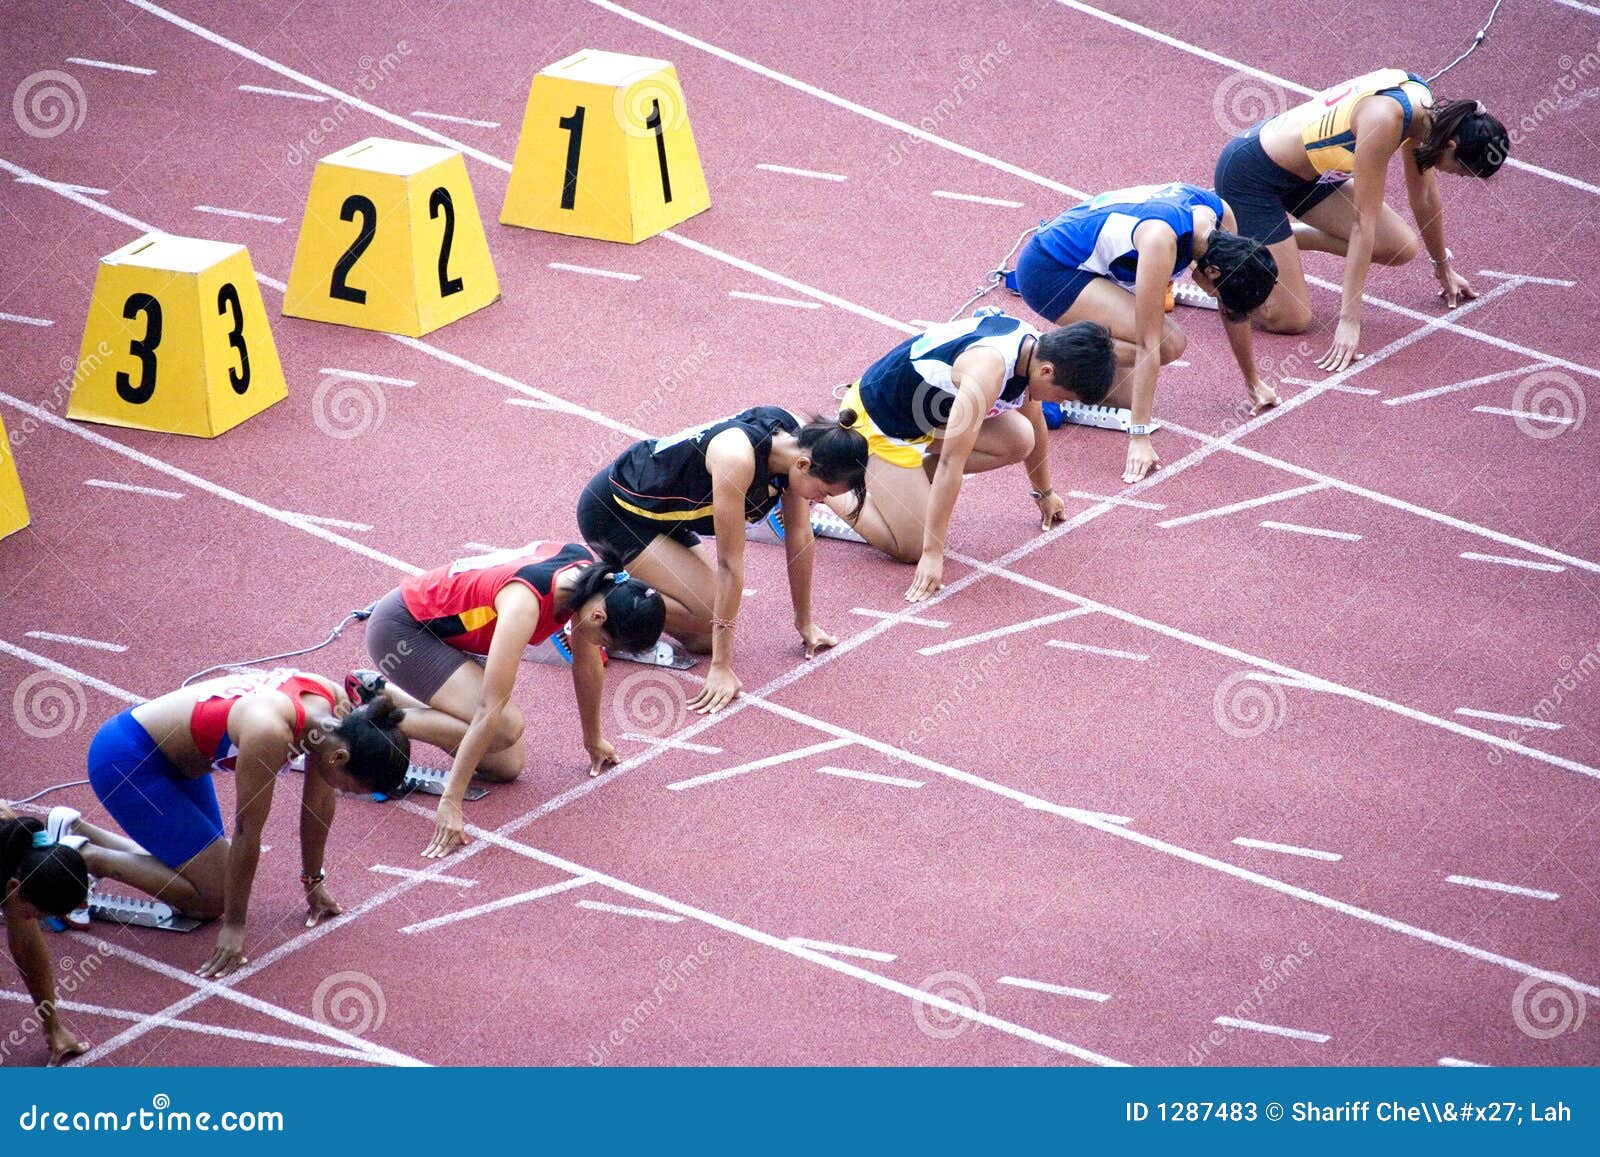 women's 100m hurdles